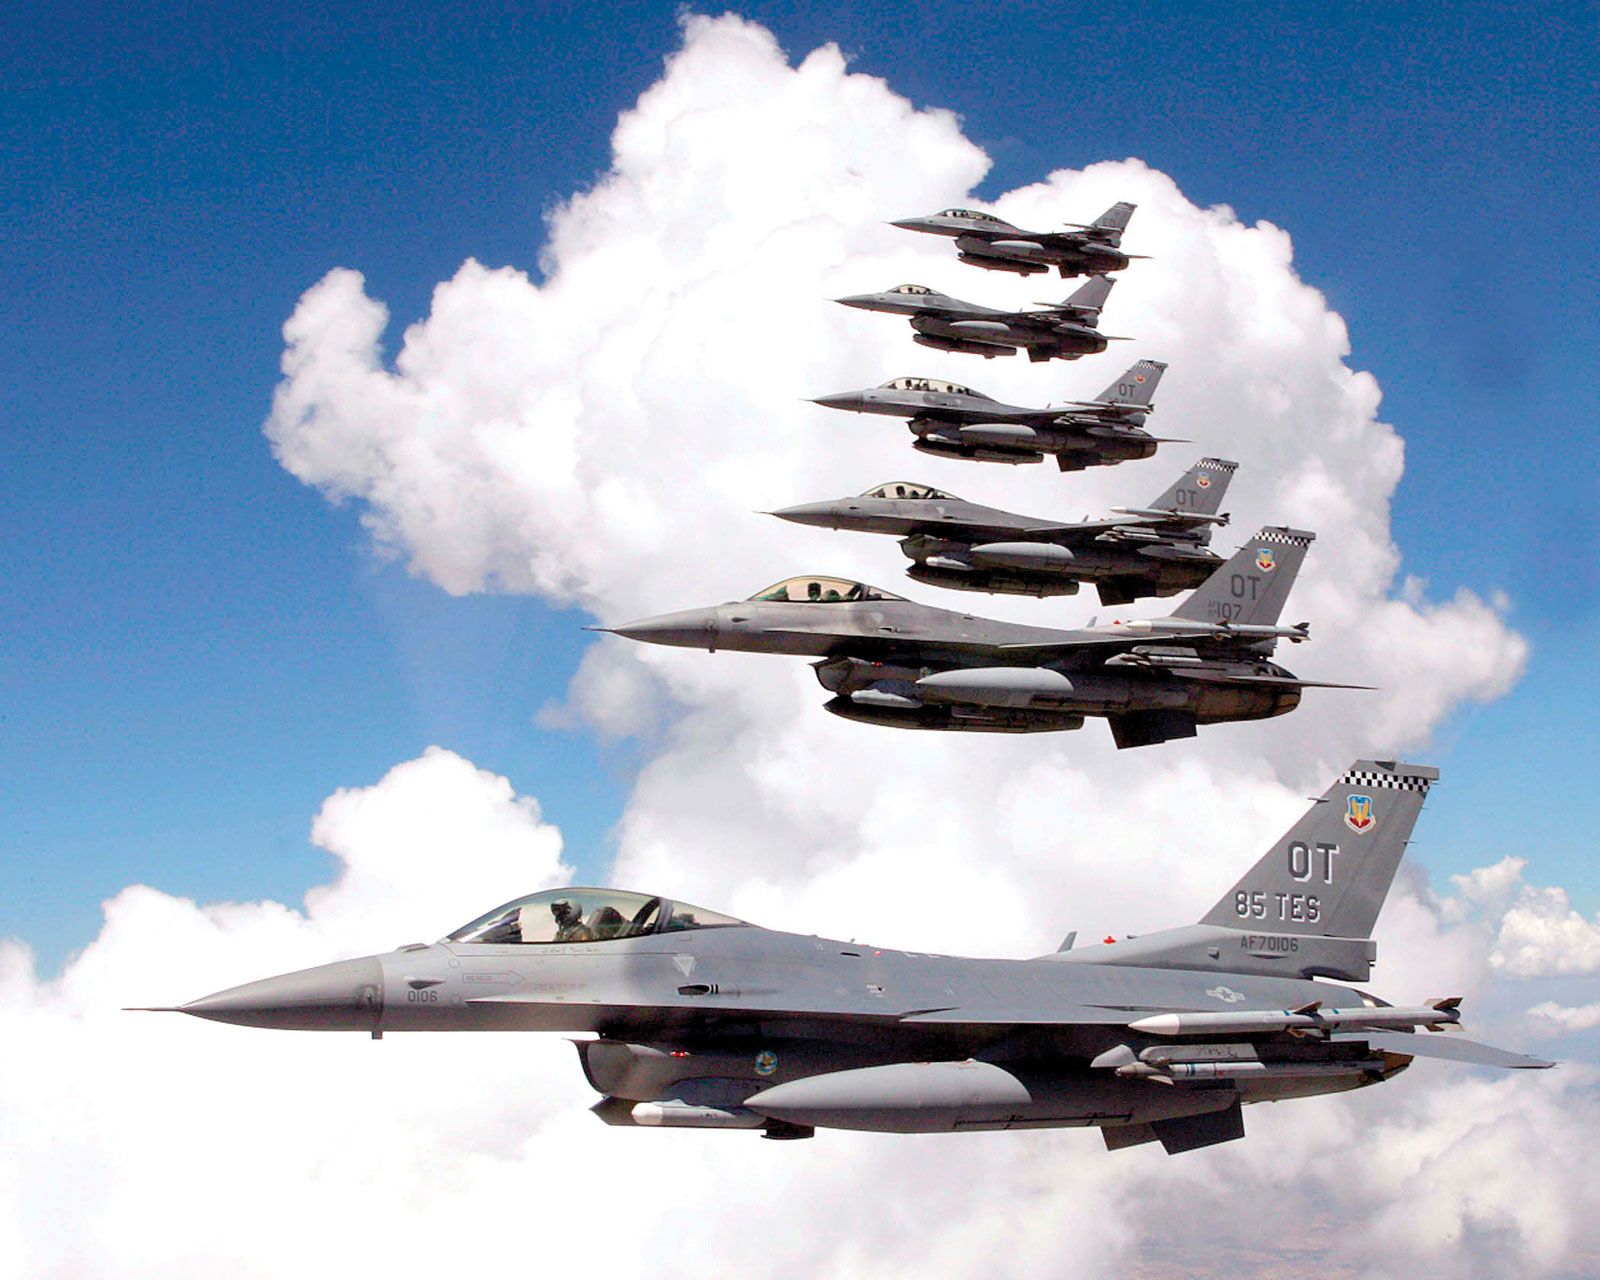 Voice of America: Ukrainska piloter påbörjar utbildning på F-16 Fighting Falcon i sommar, första gruppen på 24